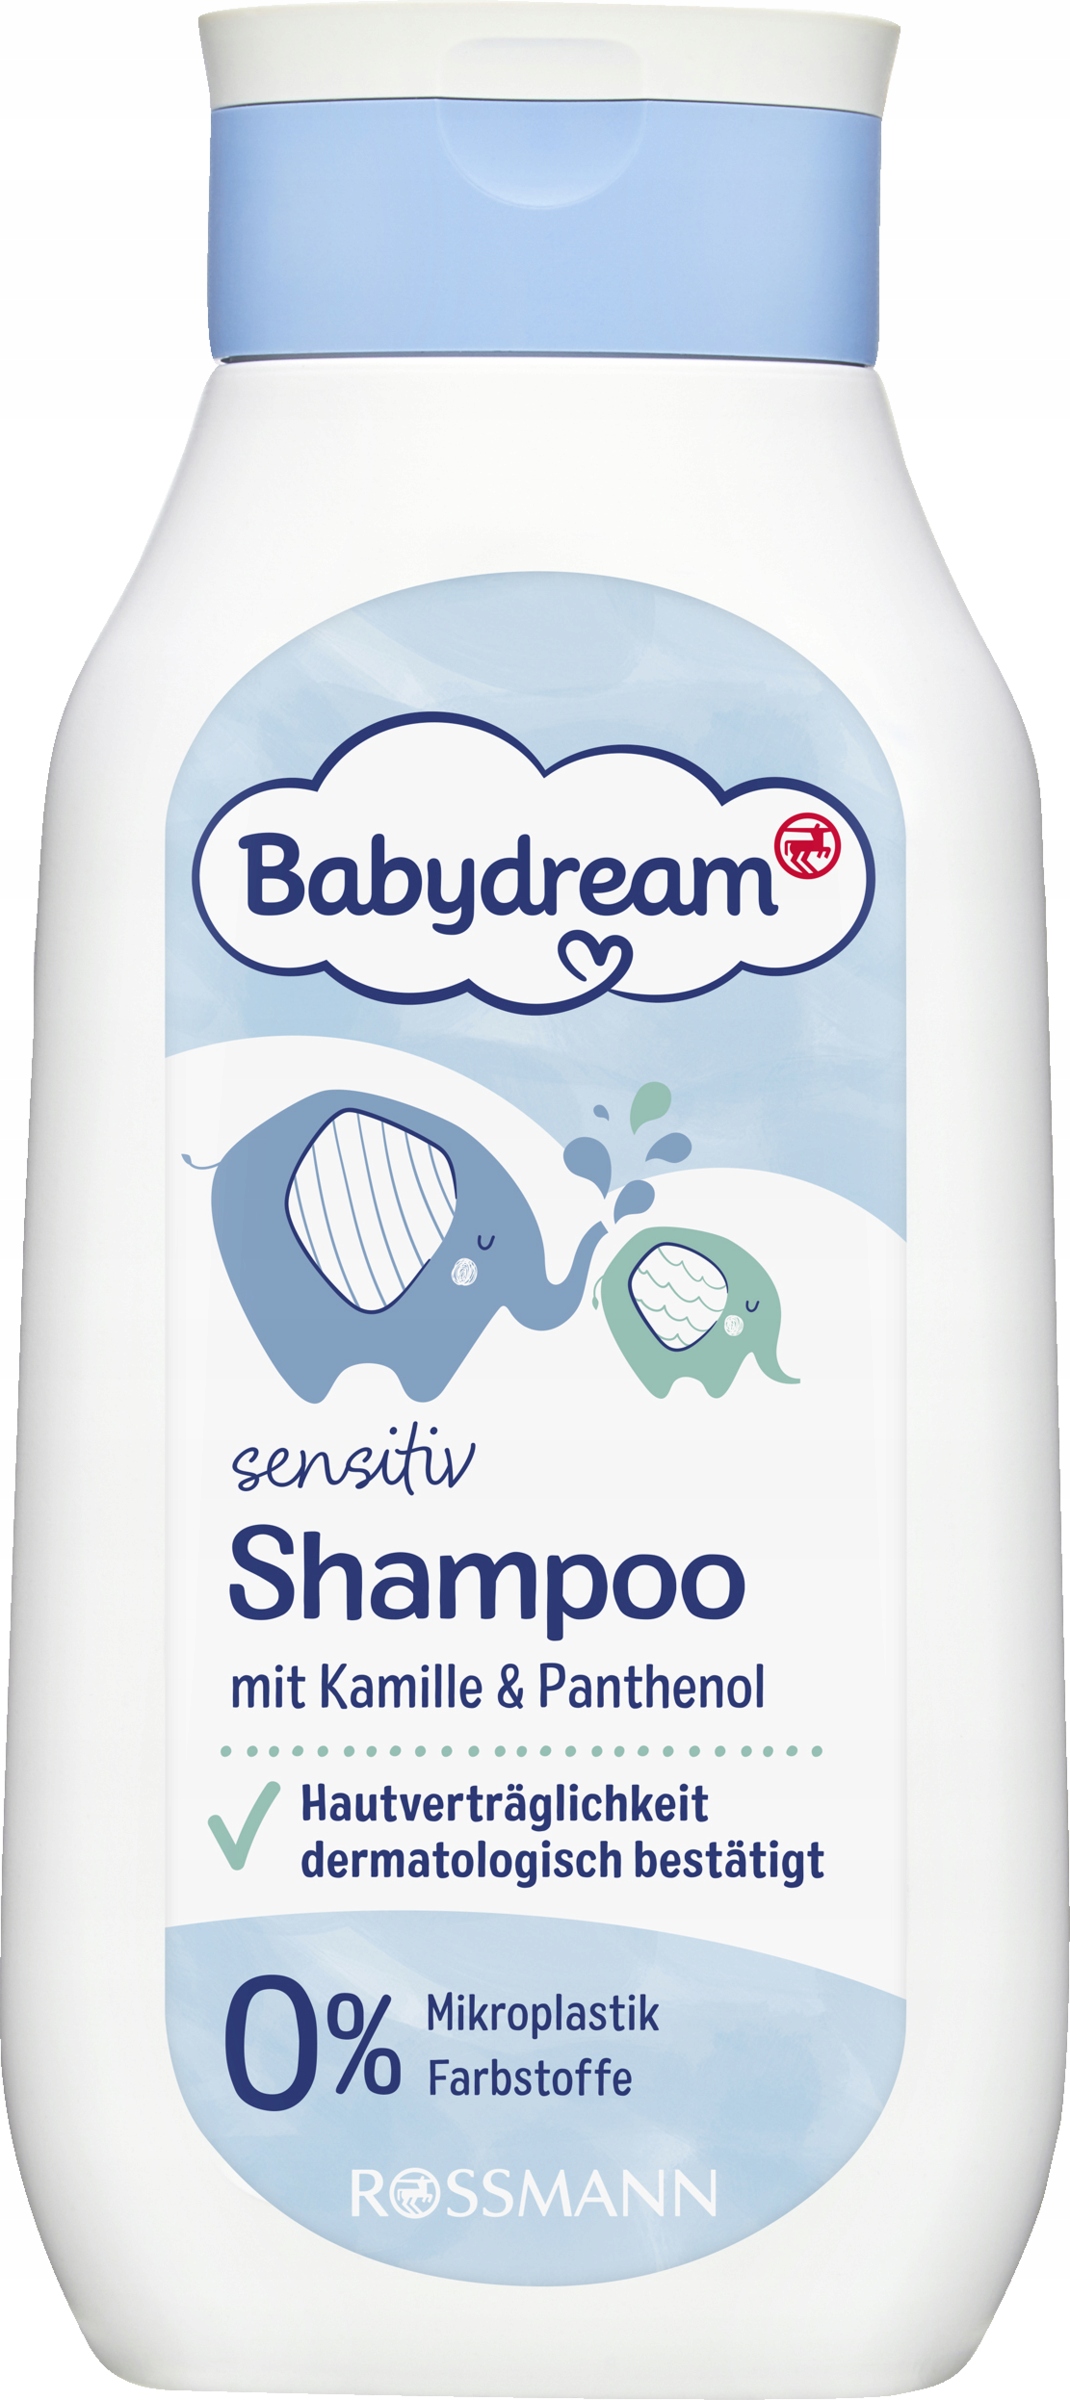 szampon babydream ułatwiający rozczesywanie nie ma w rossmanie